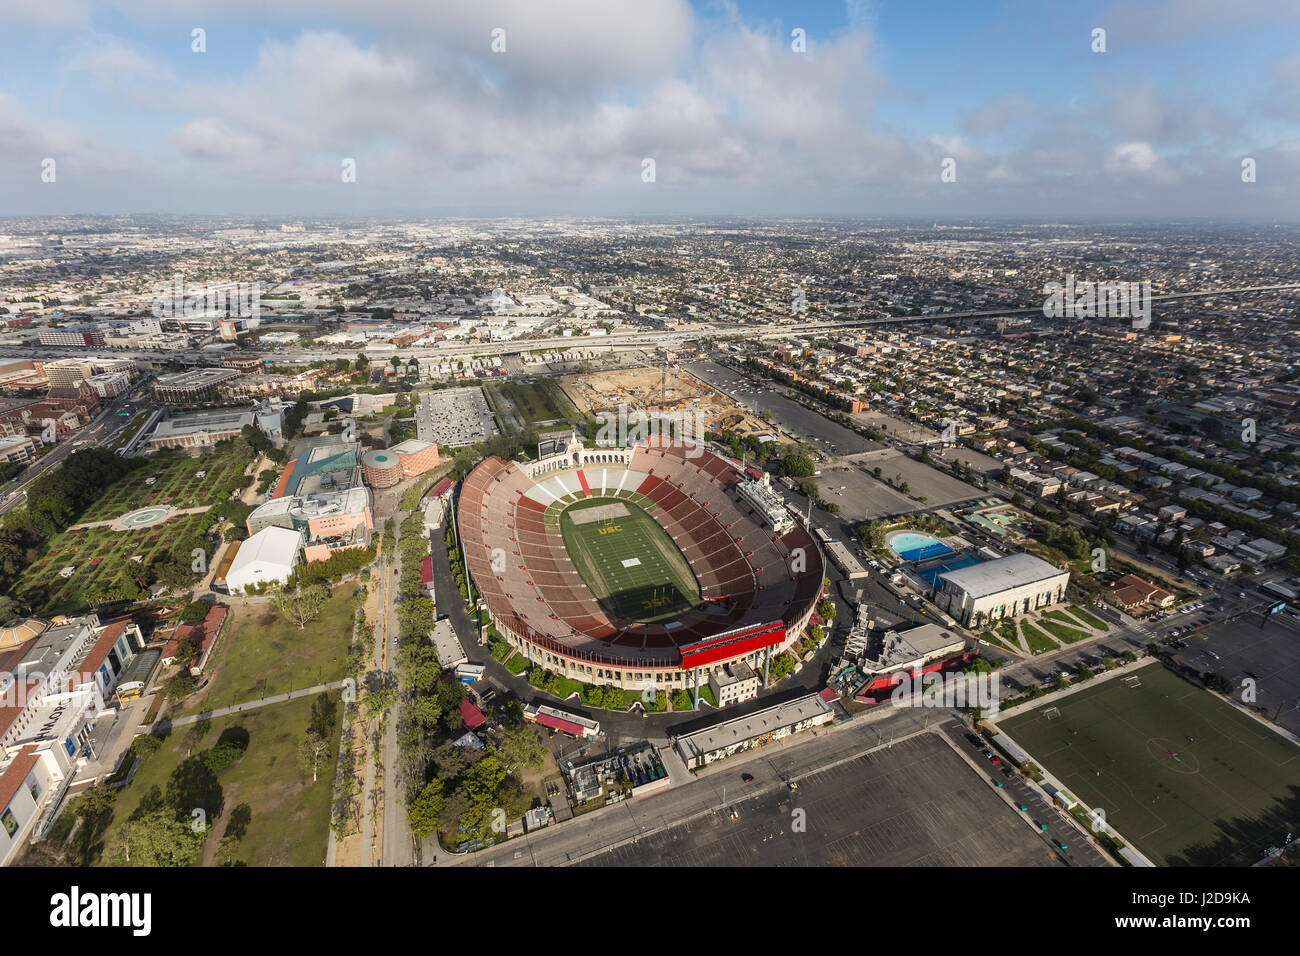 Los Angeles, Kalifornien, USA - 12. April 2017: Luftaufnahme des historischen Coliseum Stadion in der Nähe der University of Southern California. Stockfoto